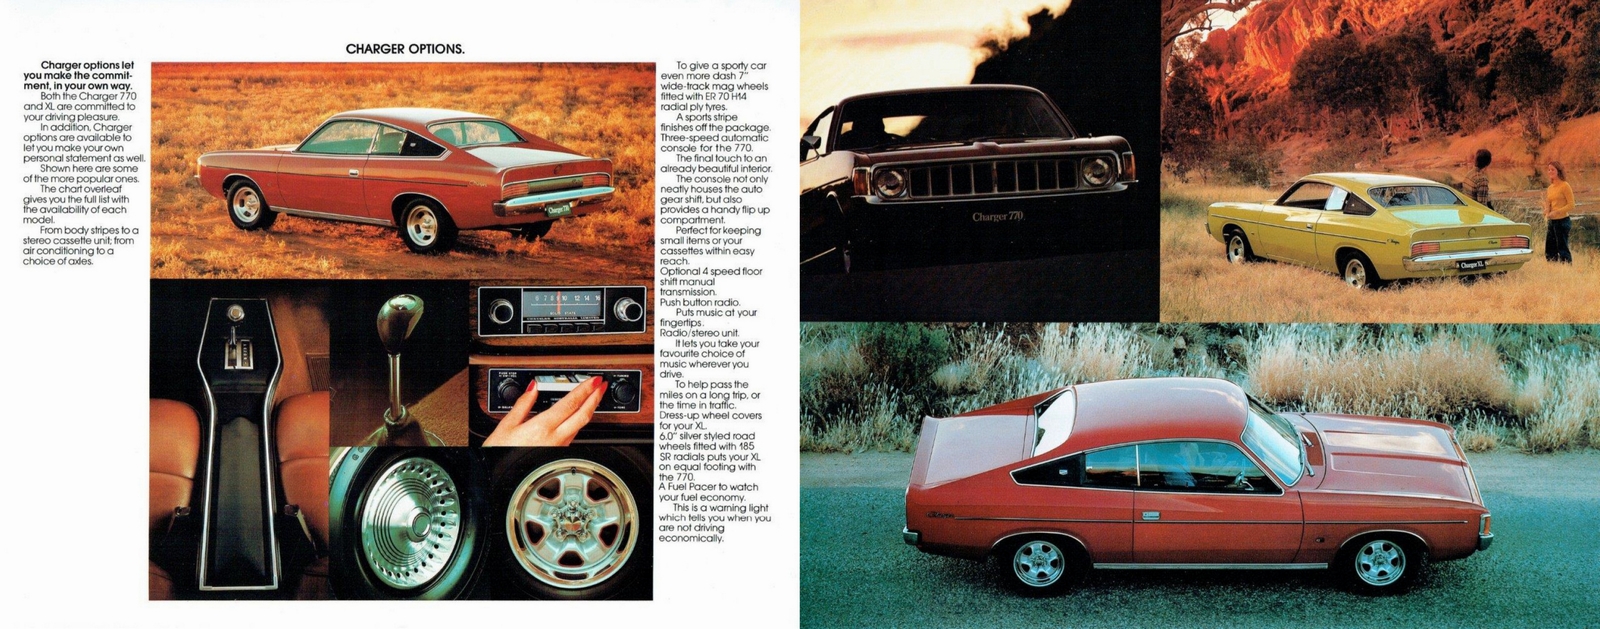 n_1975 Chrysler VK Charger-04-05.jpg